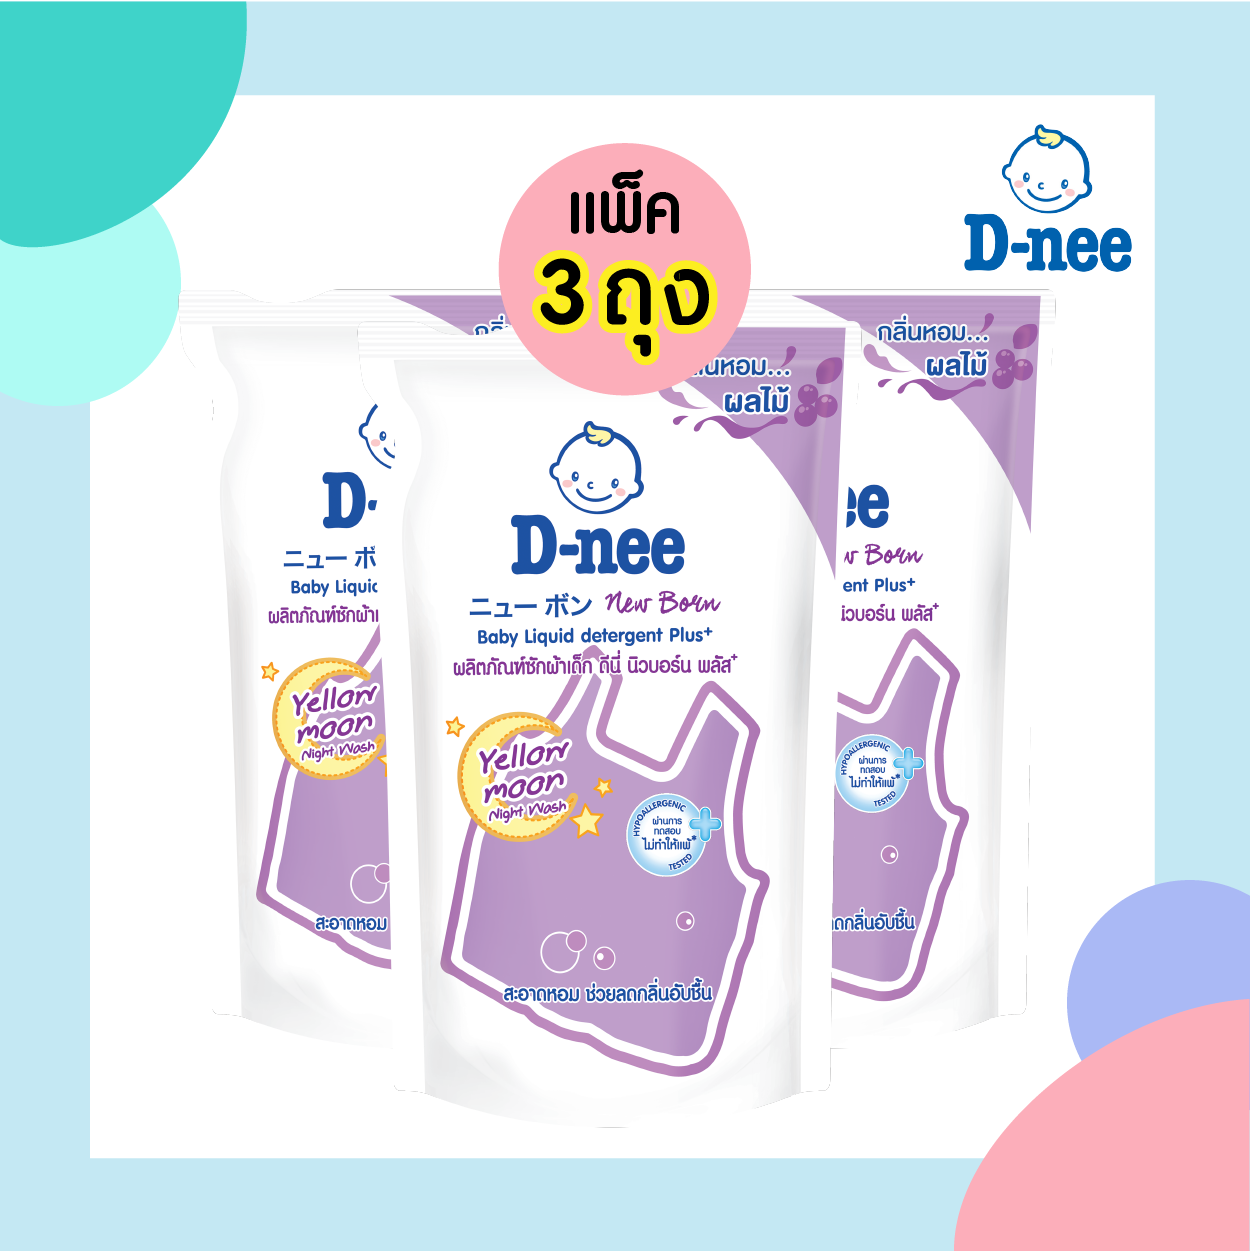 แพ็ค 3 ถุง D-NEE น้ำยาซักผ้า สำหรับเด็ก ถุงแบบเติม กลิ่น Yellow moon (600 ml.) สีม่วง